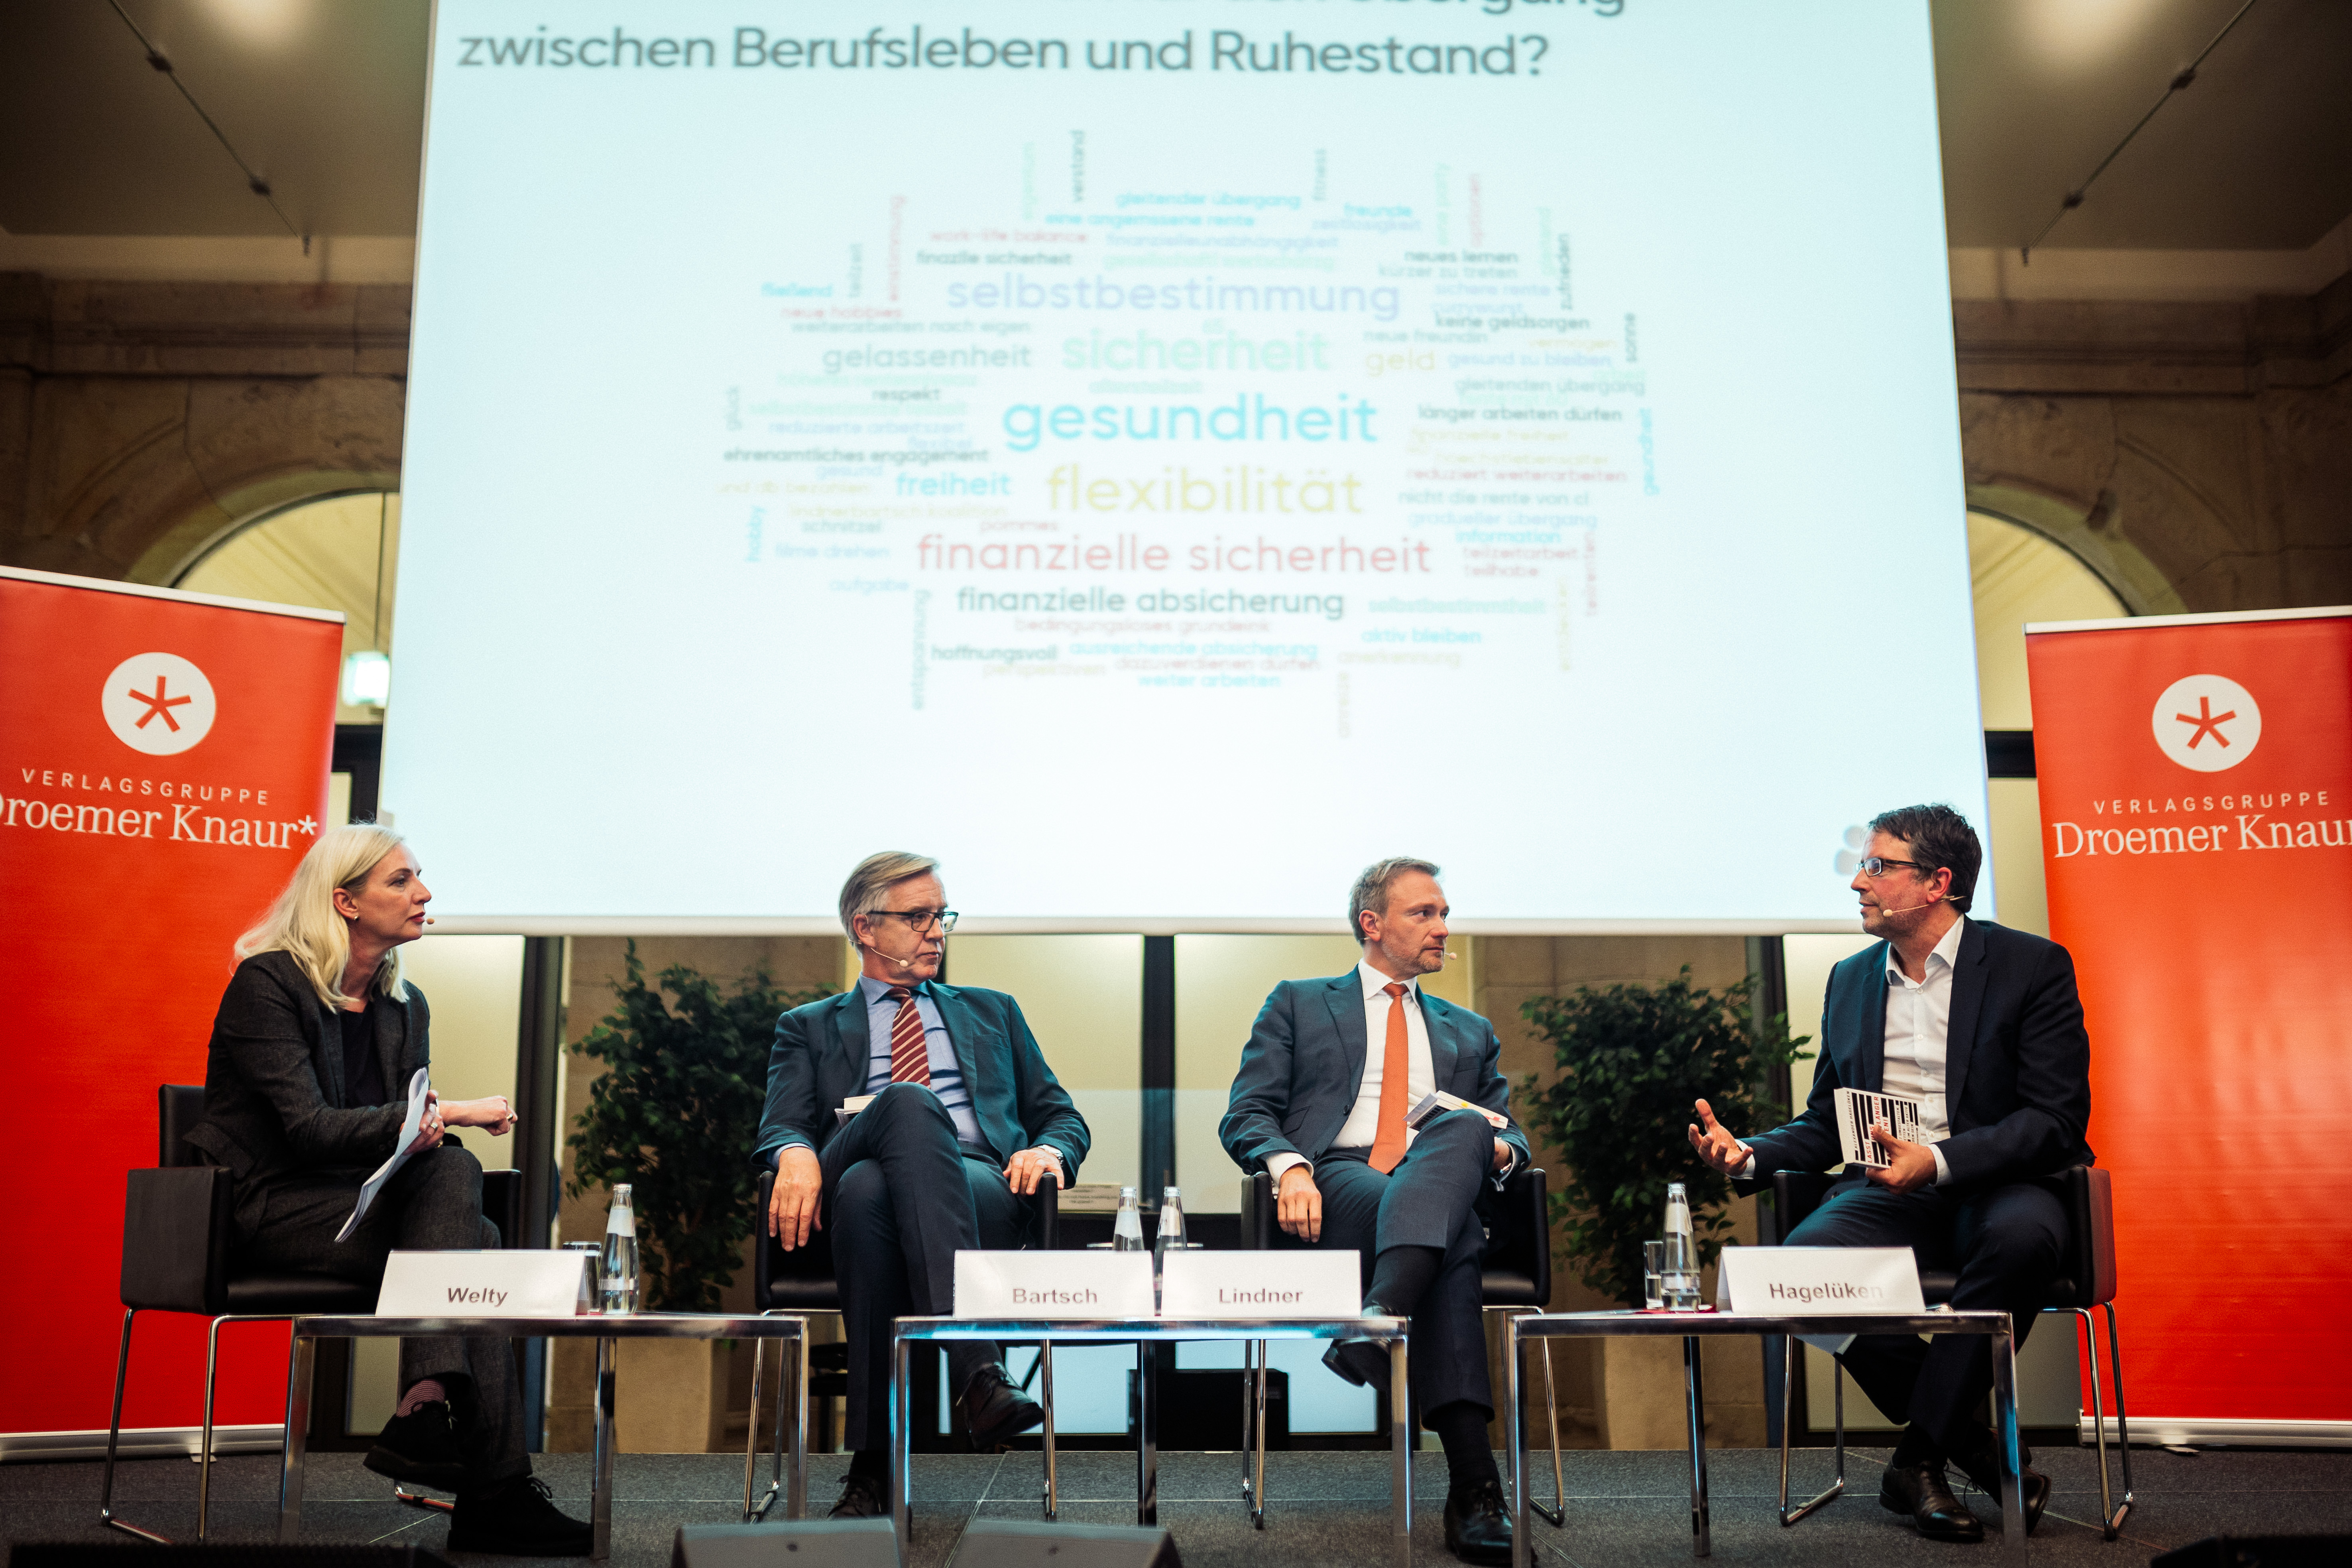 Christian Lindner, Dr. Dietmar Bartsch und Alexander Hagelüken diskutieren über die Zukunft des Rentensystems